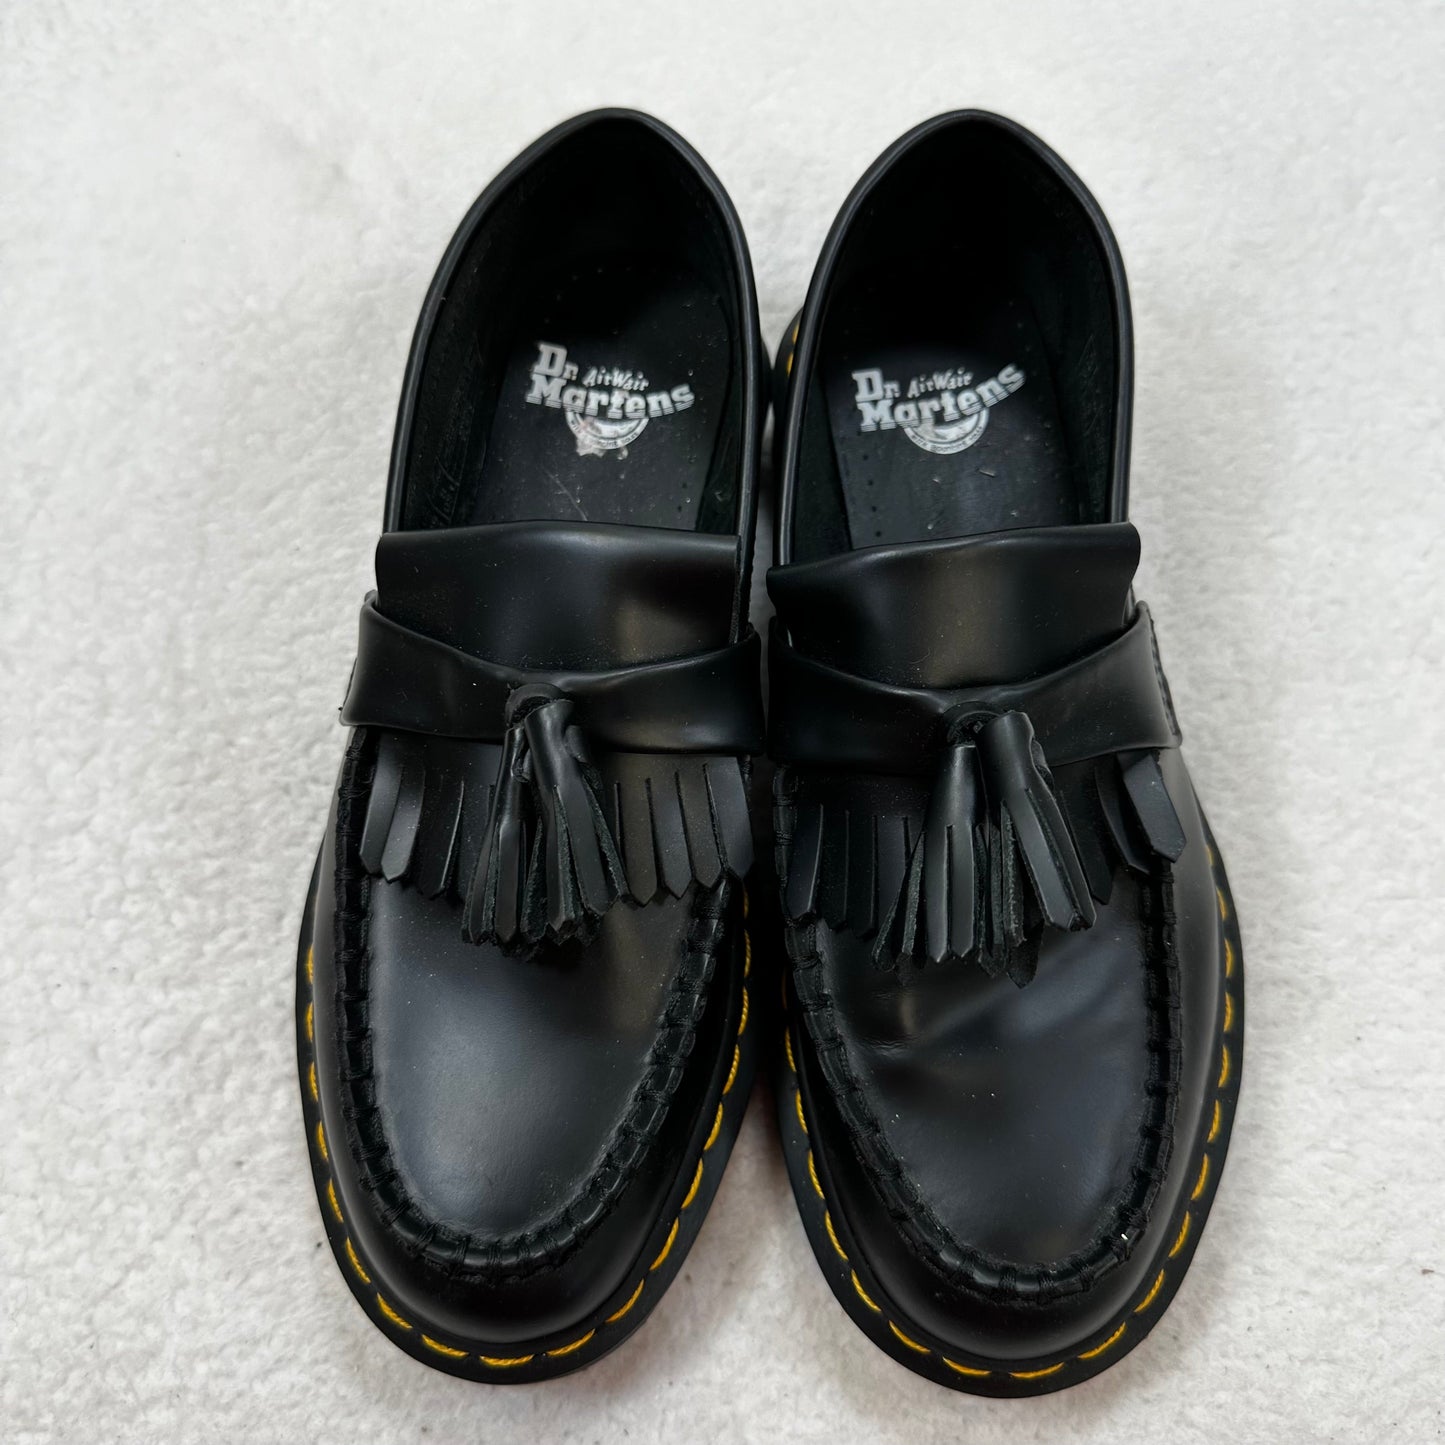 Black Shoes Flats Loafer Oxford Dr Martens, Size 8